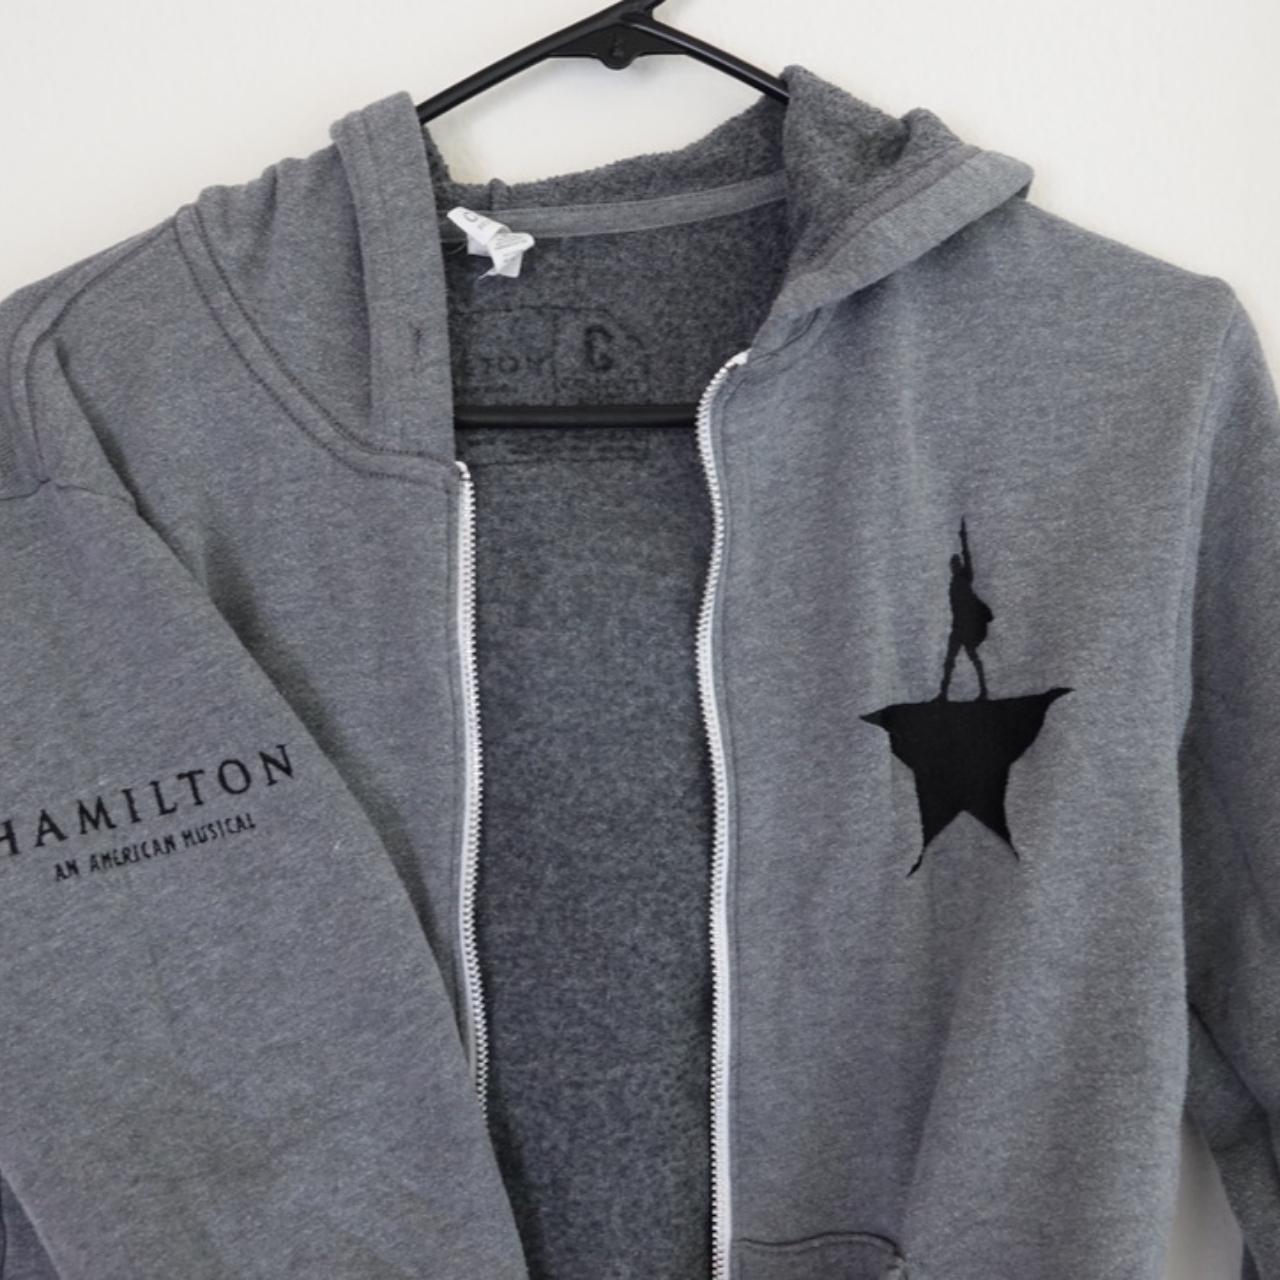 Product Image 2 - Grey Alexander Hamilton zip-up hoodie.